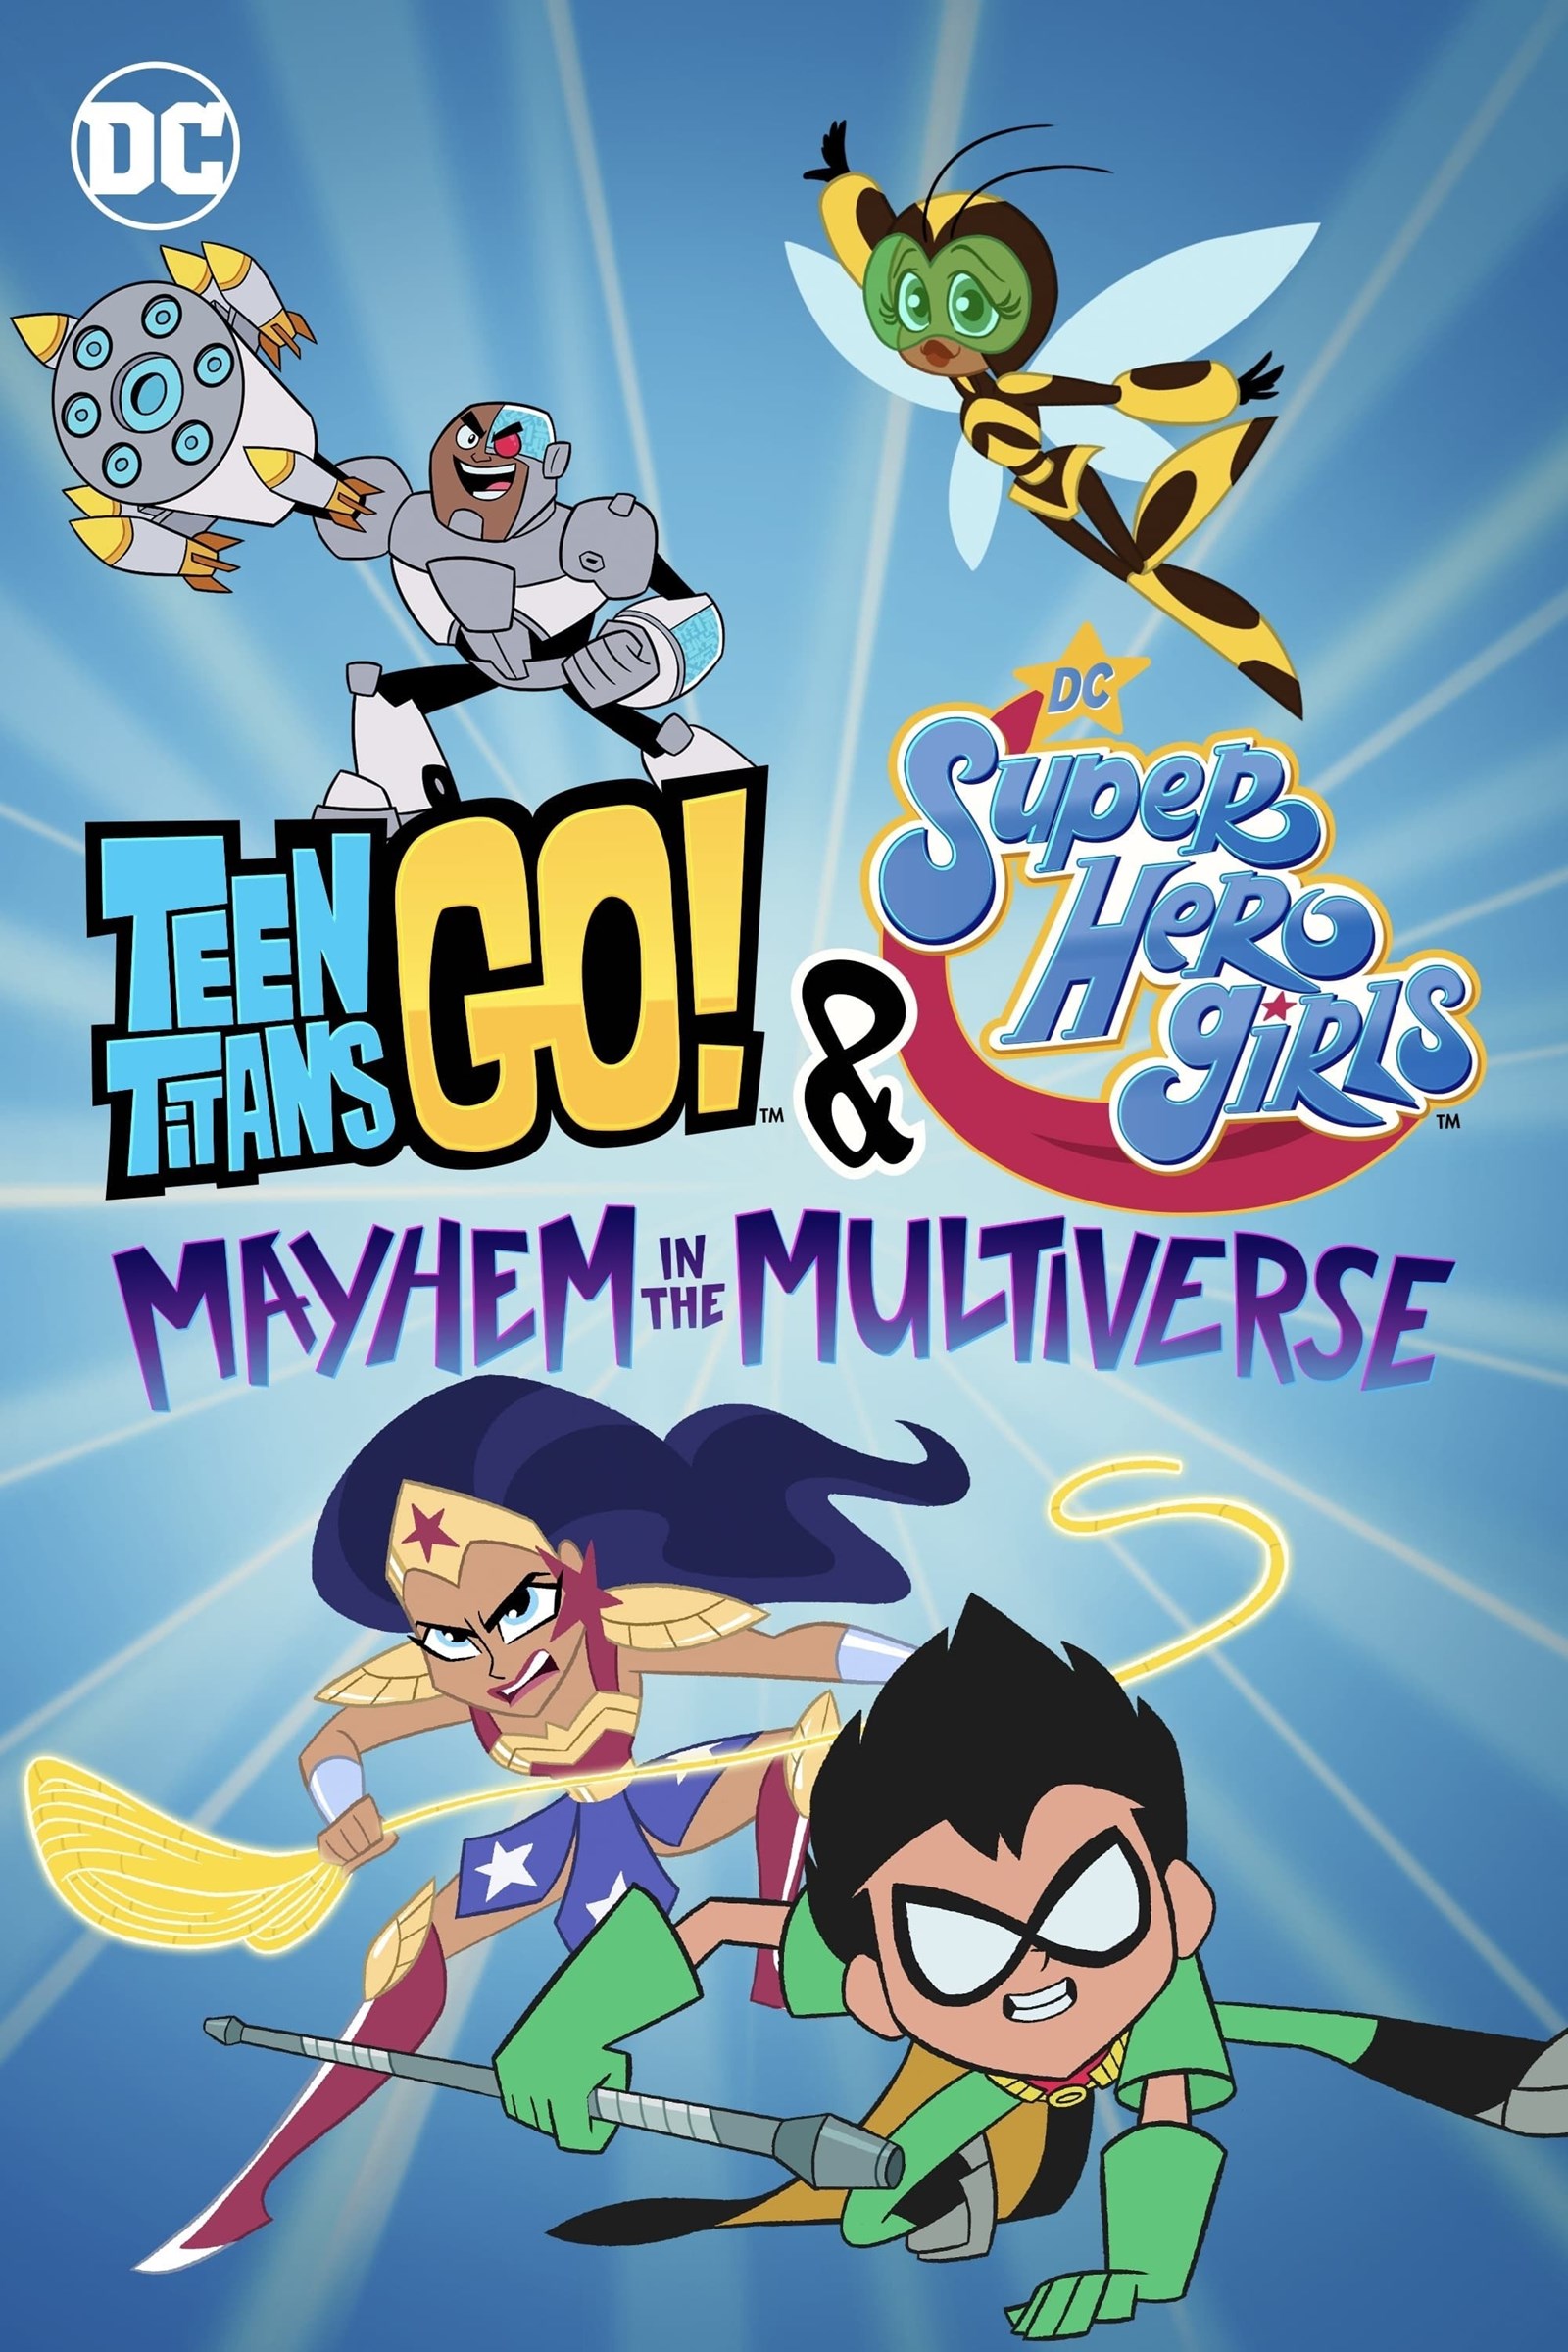 مشاهدة فيلم Teen Titans Go! & DC Super Hero Girls: Mayhem in the Multiverse 2022 مترجم اون لاين